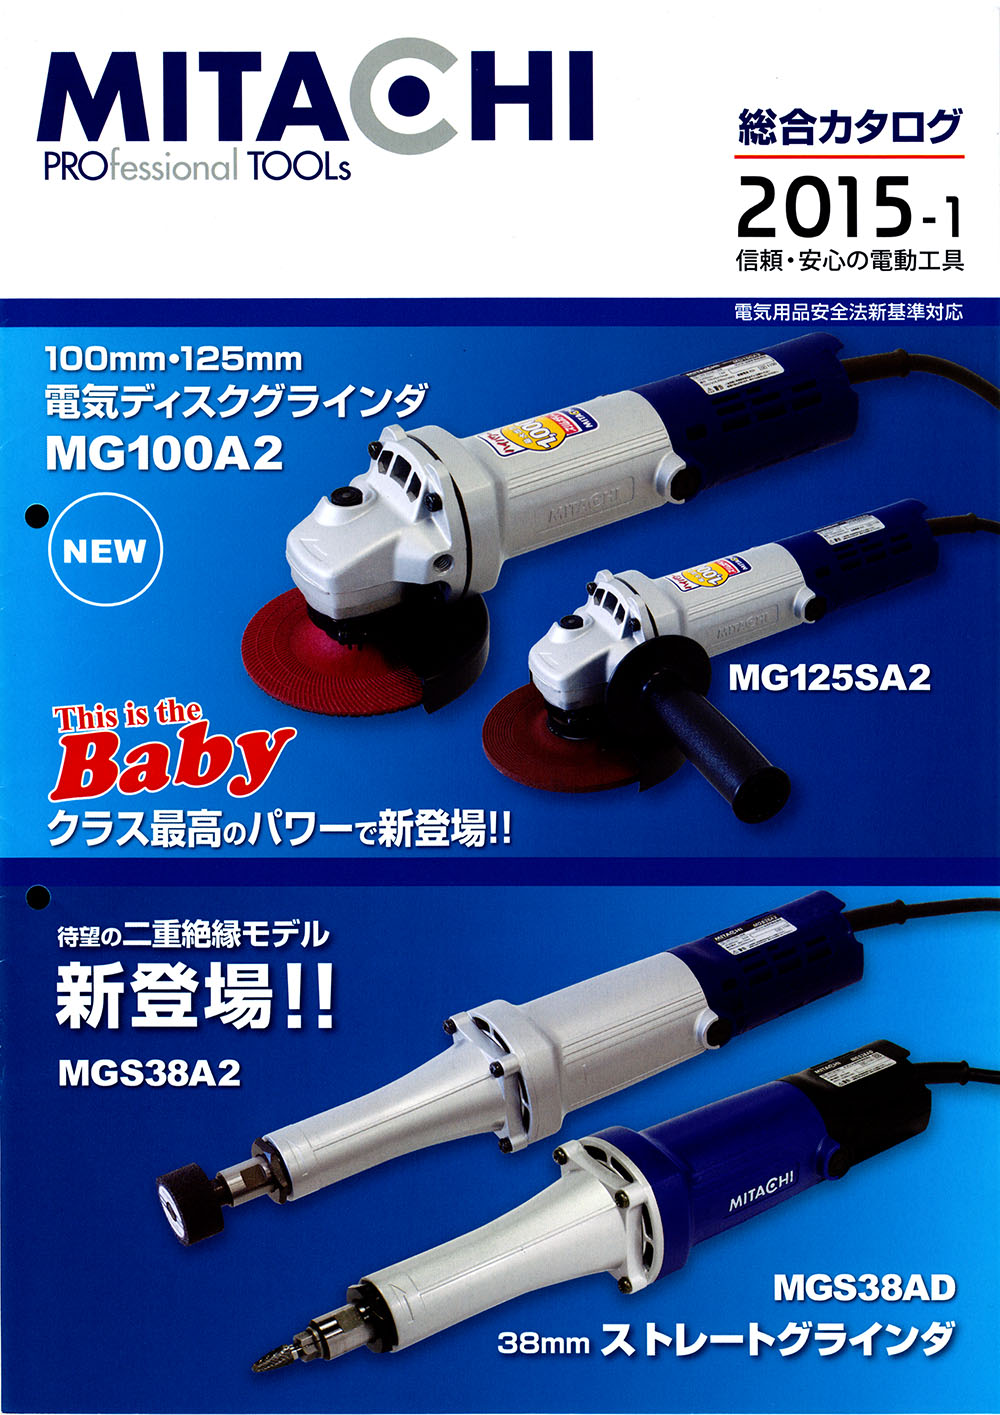 新製品情報も満載 ミタチ ストレートグラインダ MGS38BD-200V 作業工具 電動工具 ディスクグラインダー